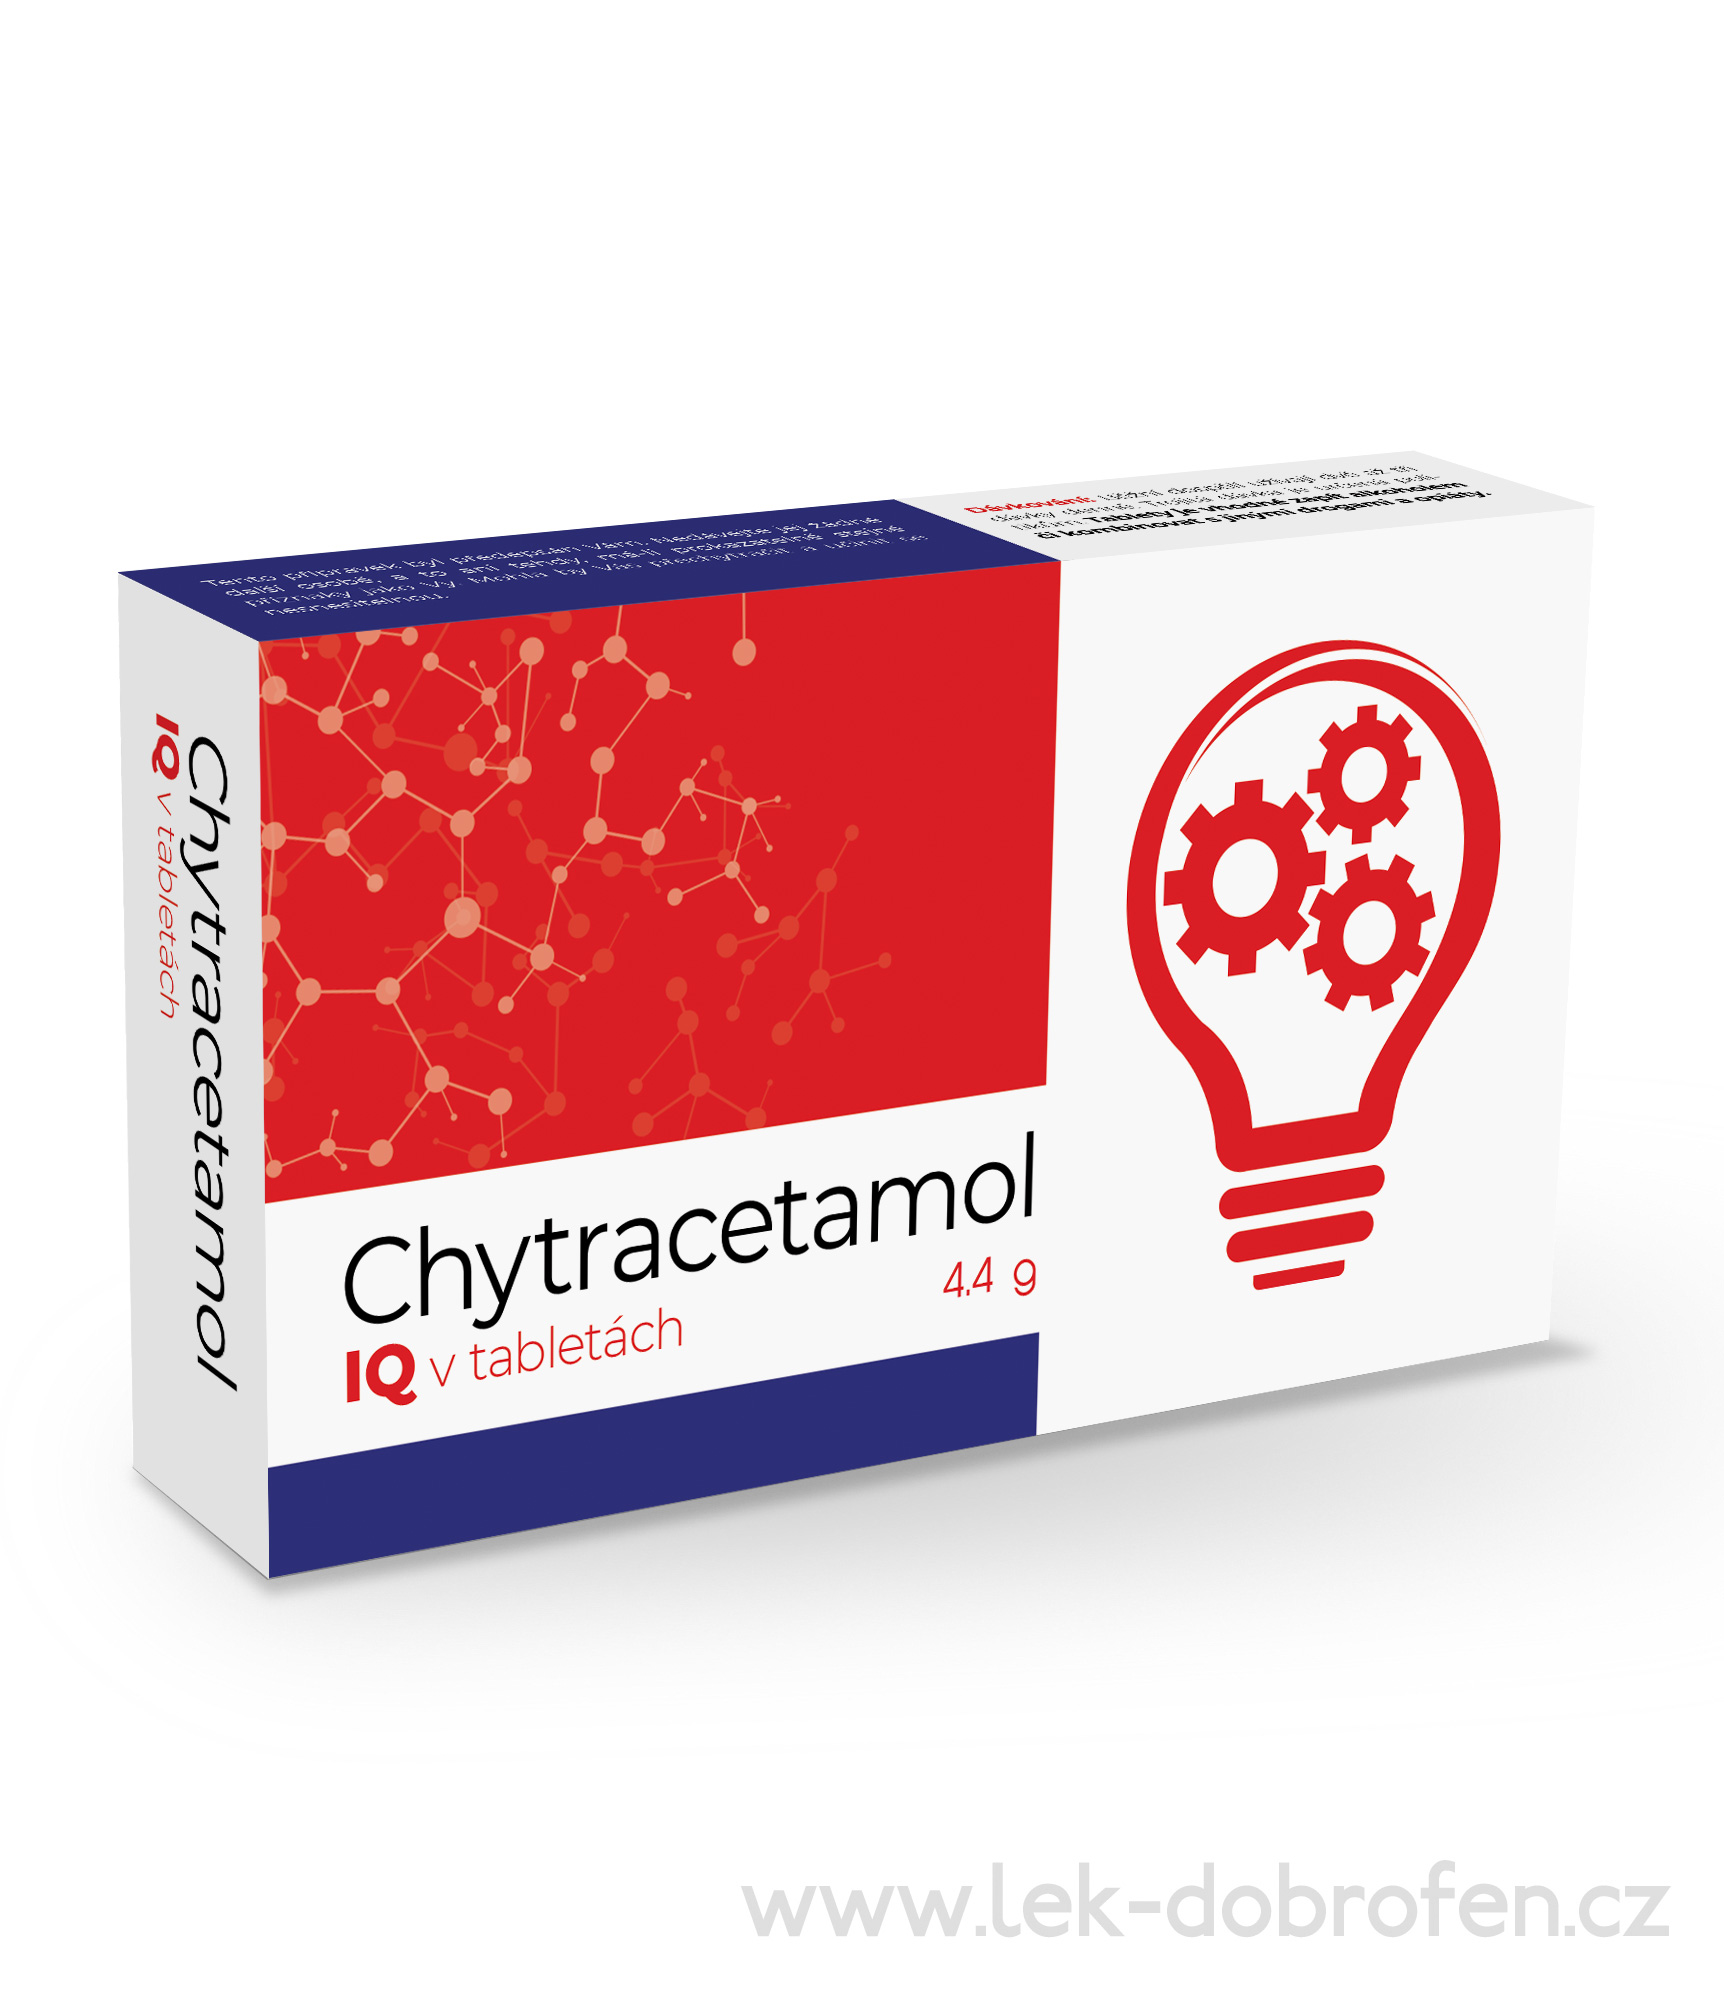 Chytracetamol